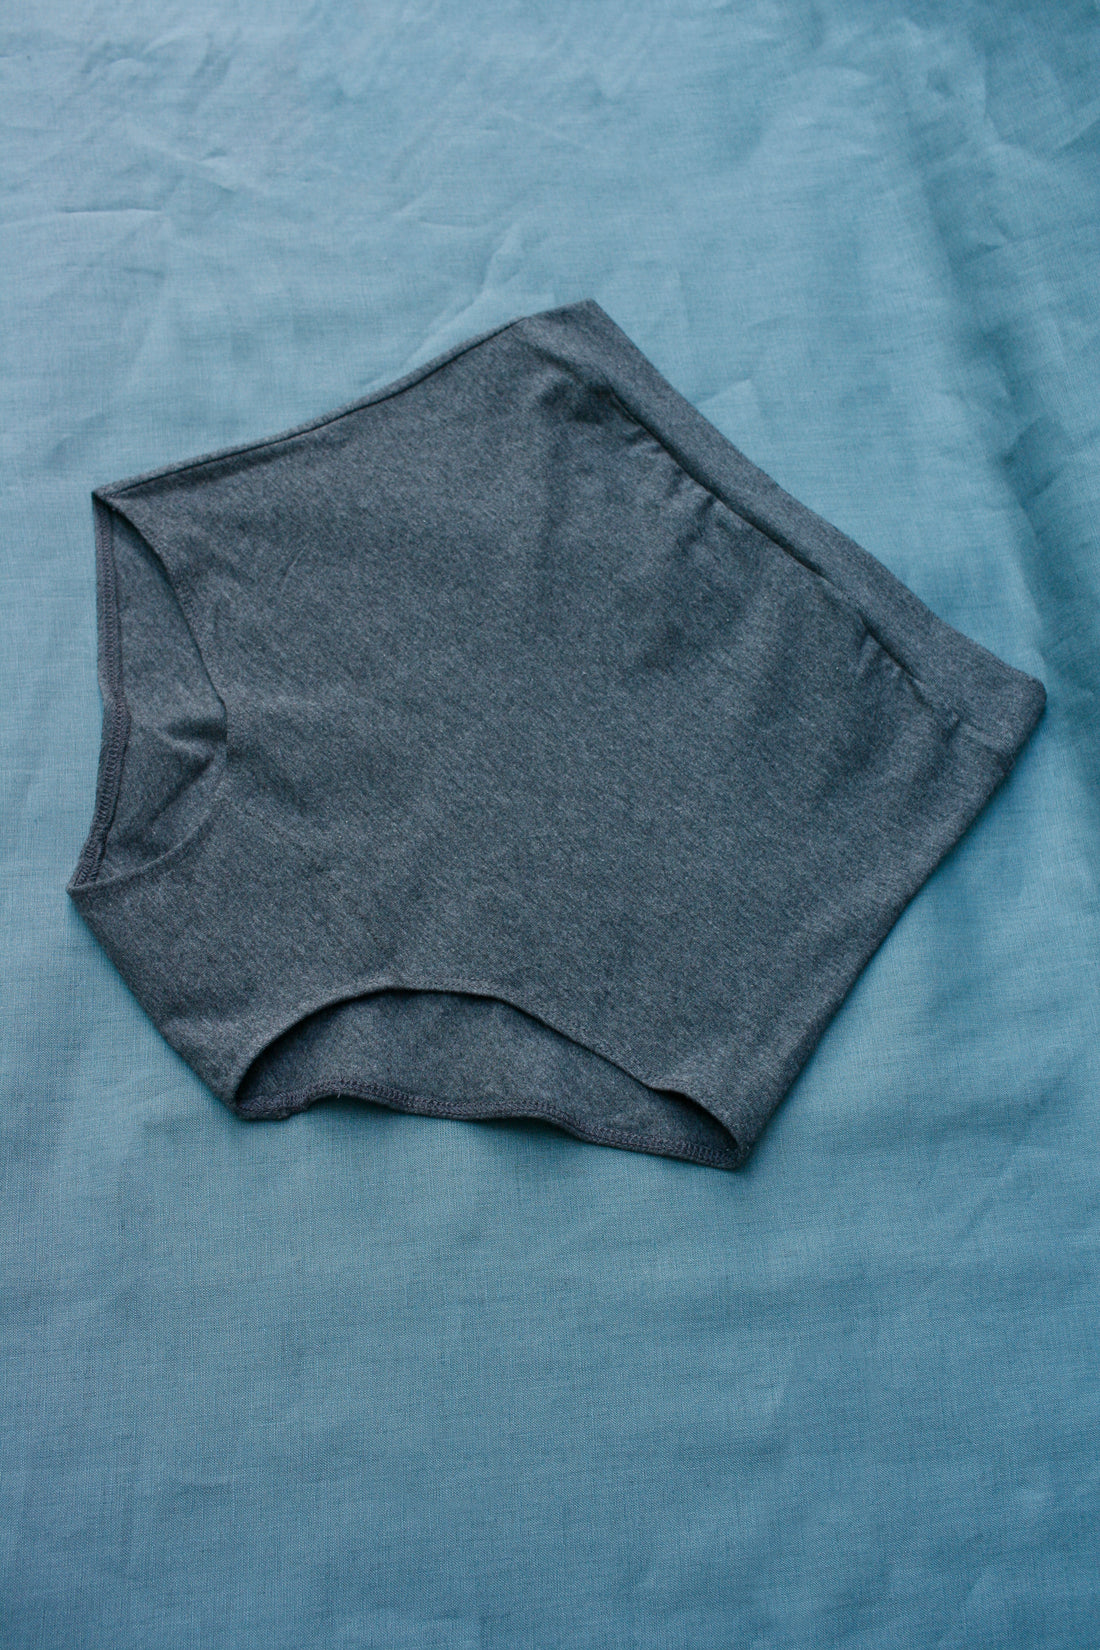 High-waist underwear No6076w, neutrals – atelier b